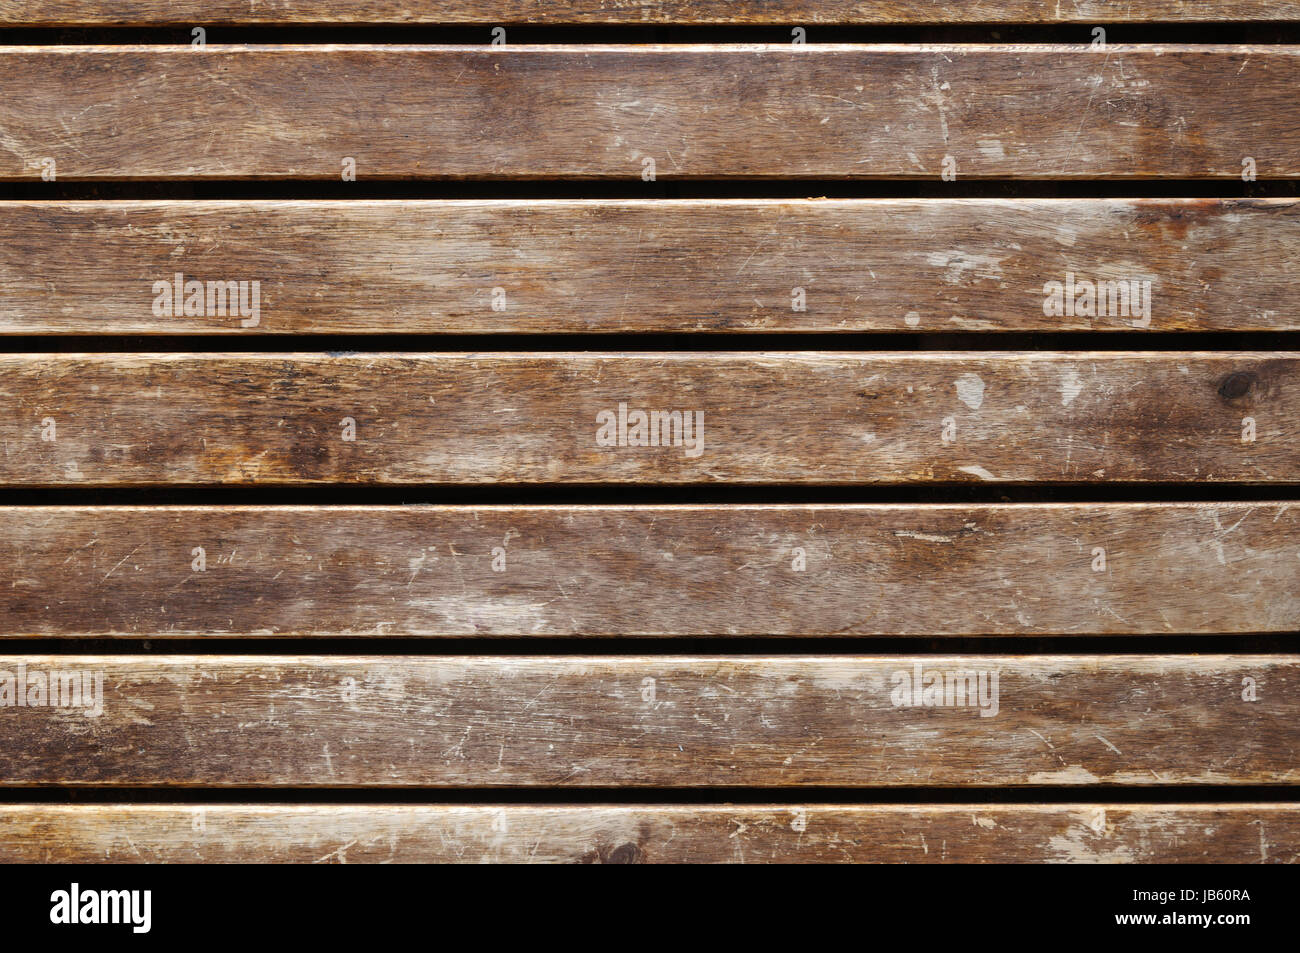 Abstrakter Hintergrund von einer dekorativen Holzstruktur. Stock Photo